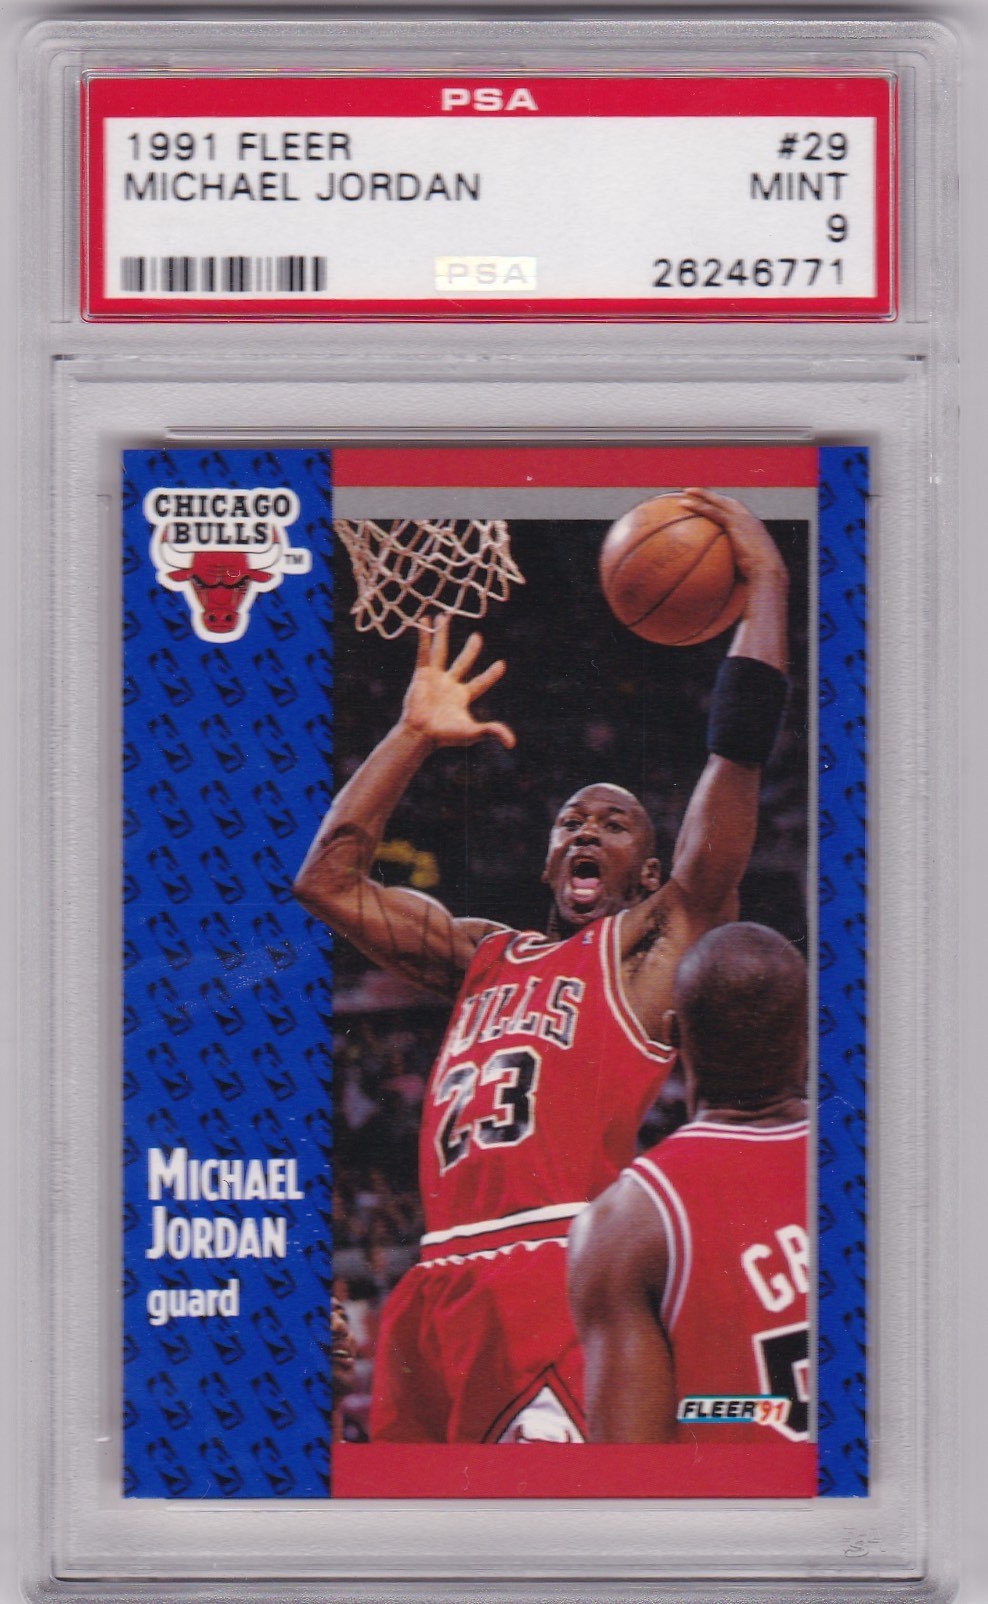 1991 Fleer Michael Jordan Card #29 PSA 